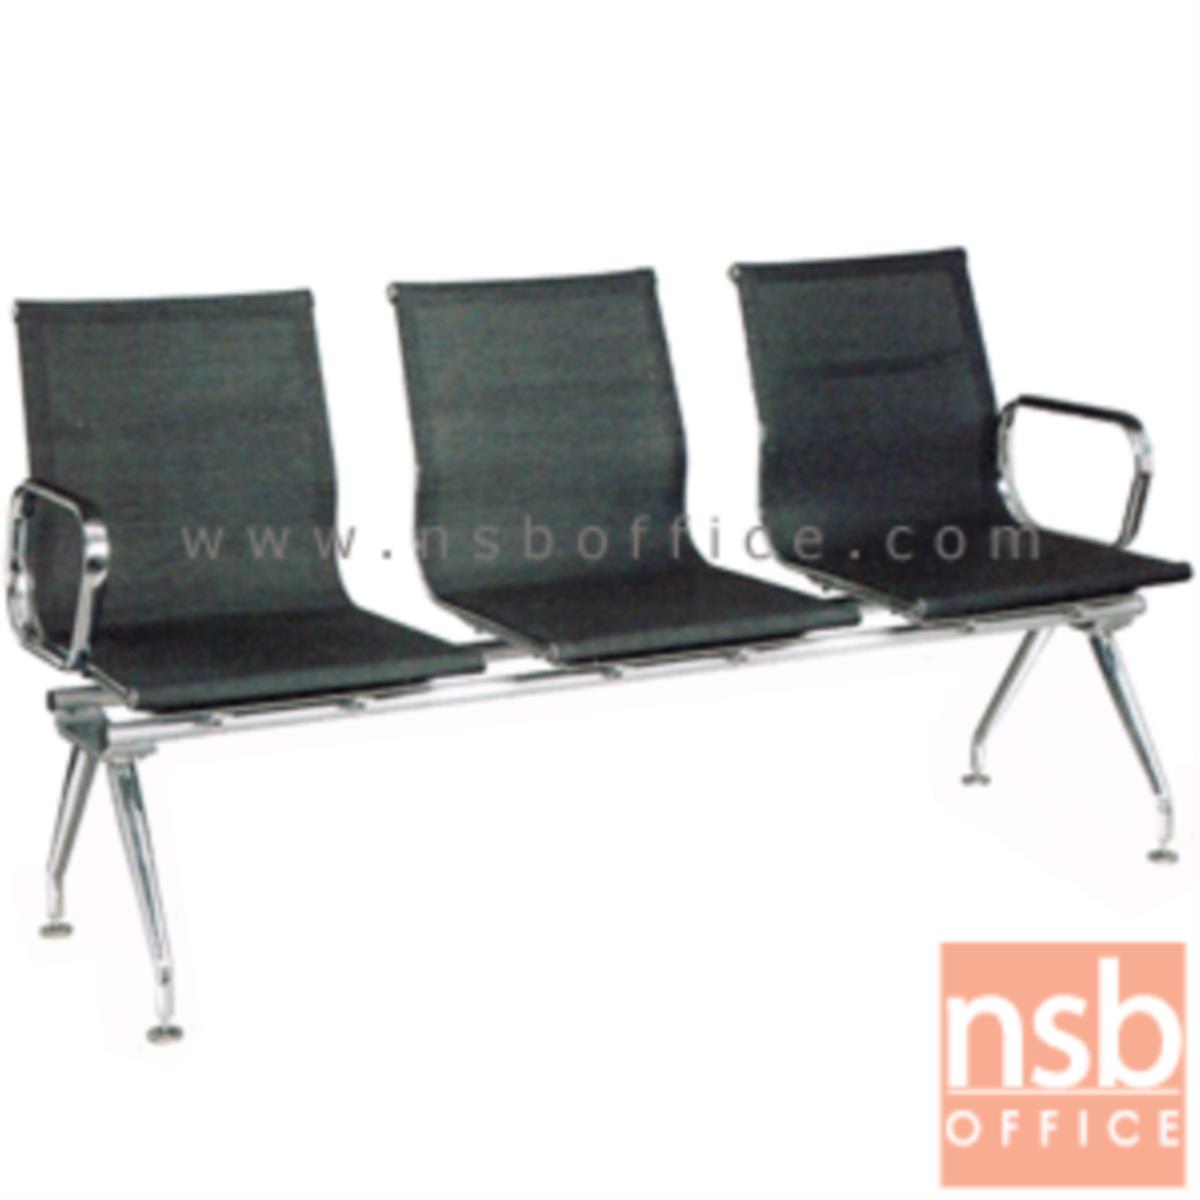 B06A102:เก้าอี้นั่งคอยผ้าเน็ต รุ่น CBT-286  2 ,3 ,4 ที่นั่ง ขนาด 114W ,175W ,230W cm. ขาเหล็ก